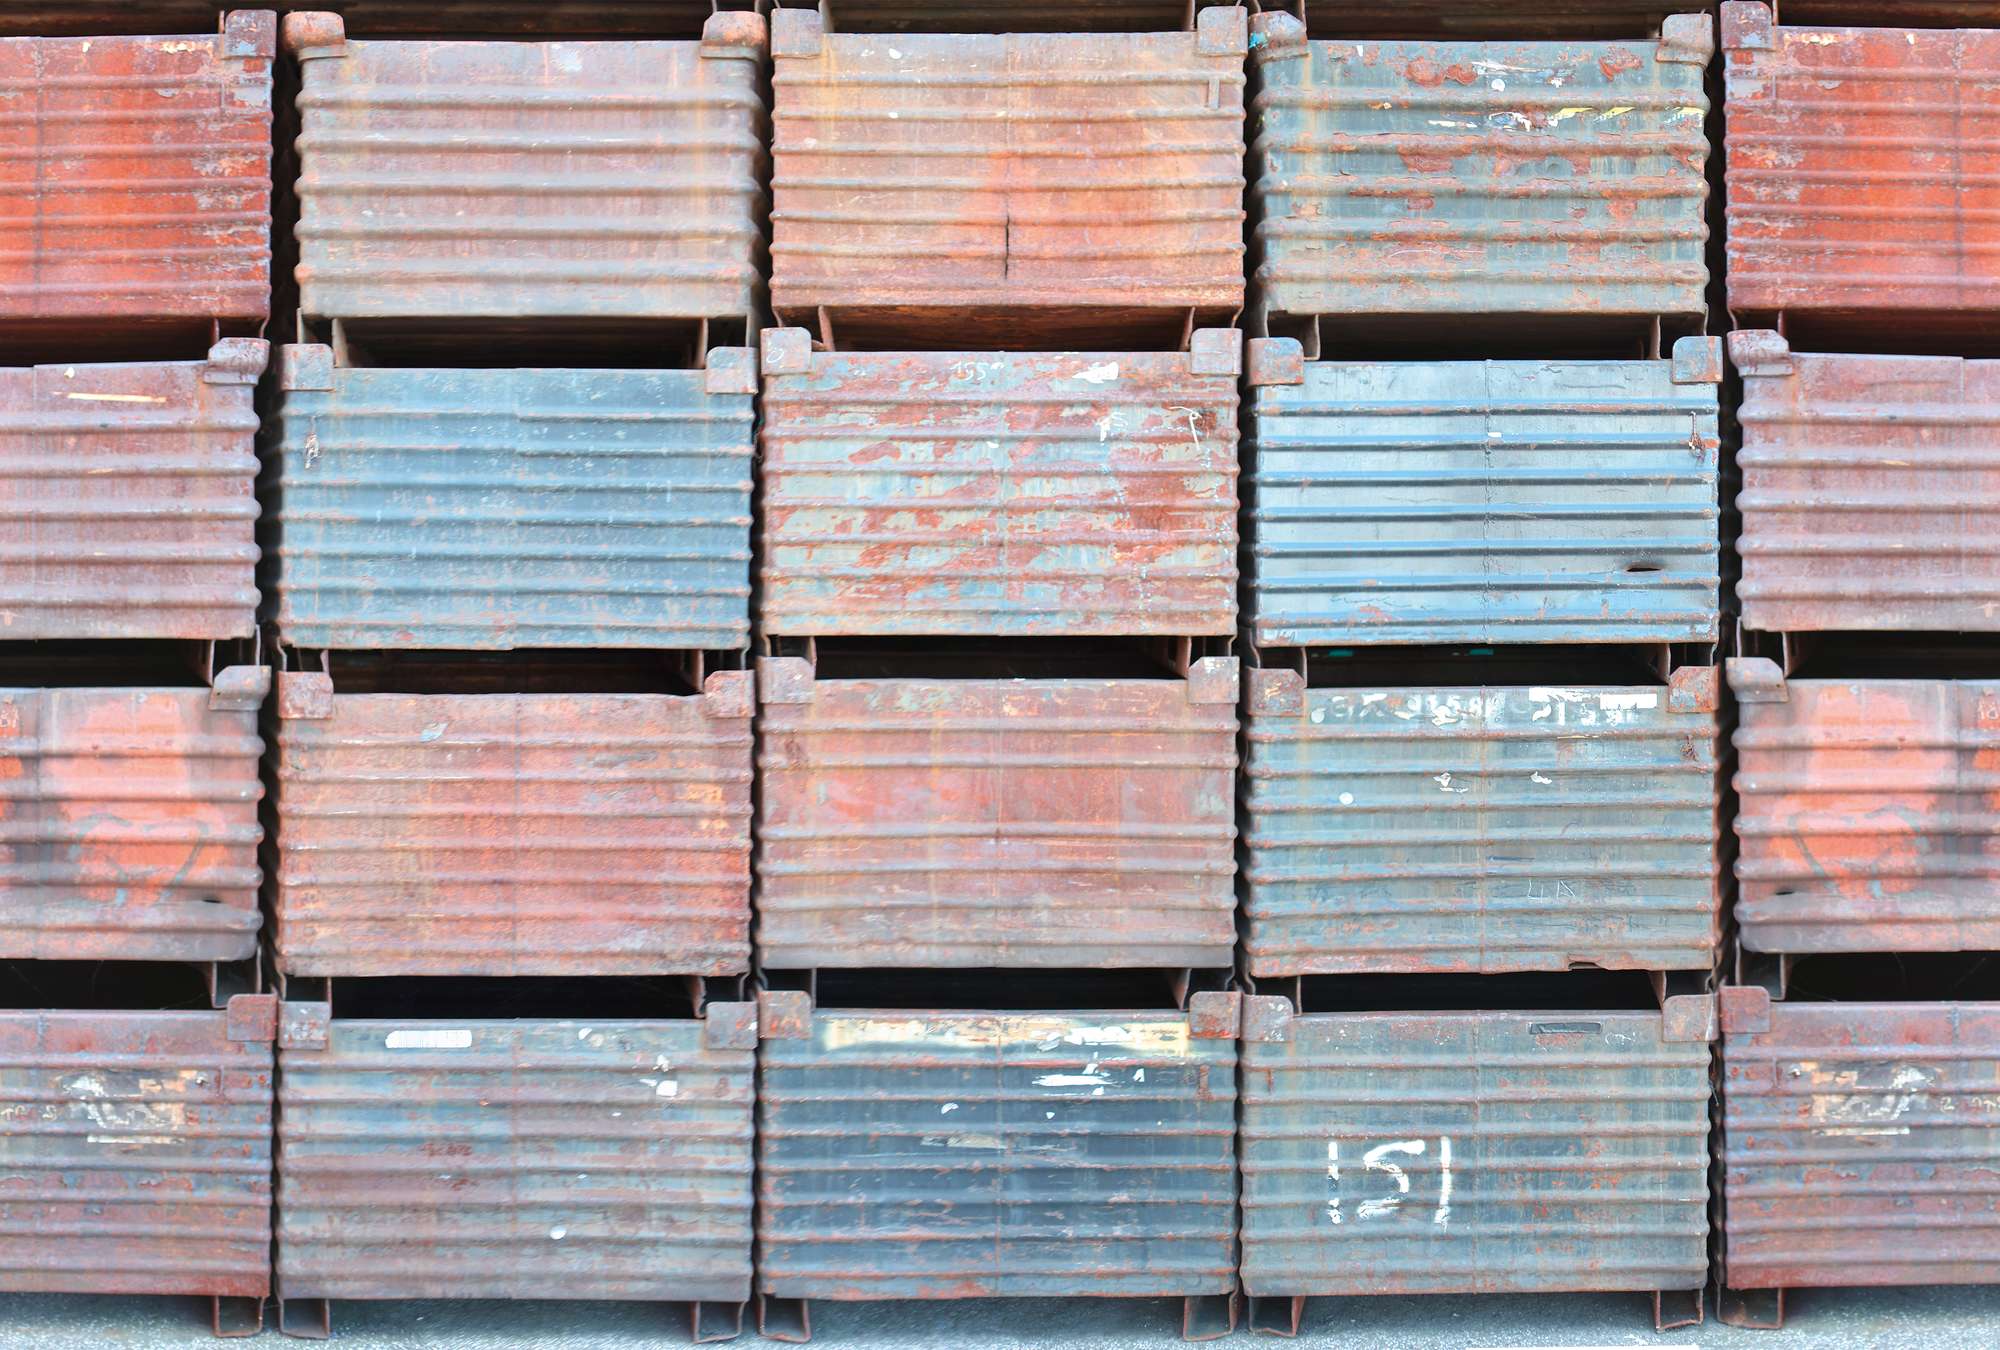             Muurschildering met kleurrijke stalen containers
        